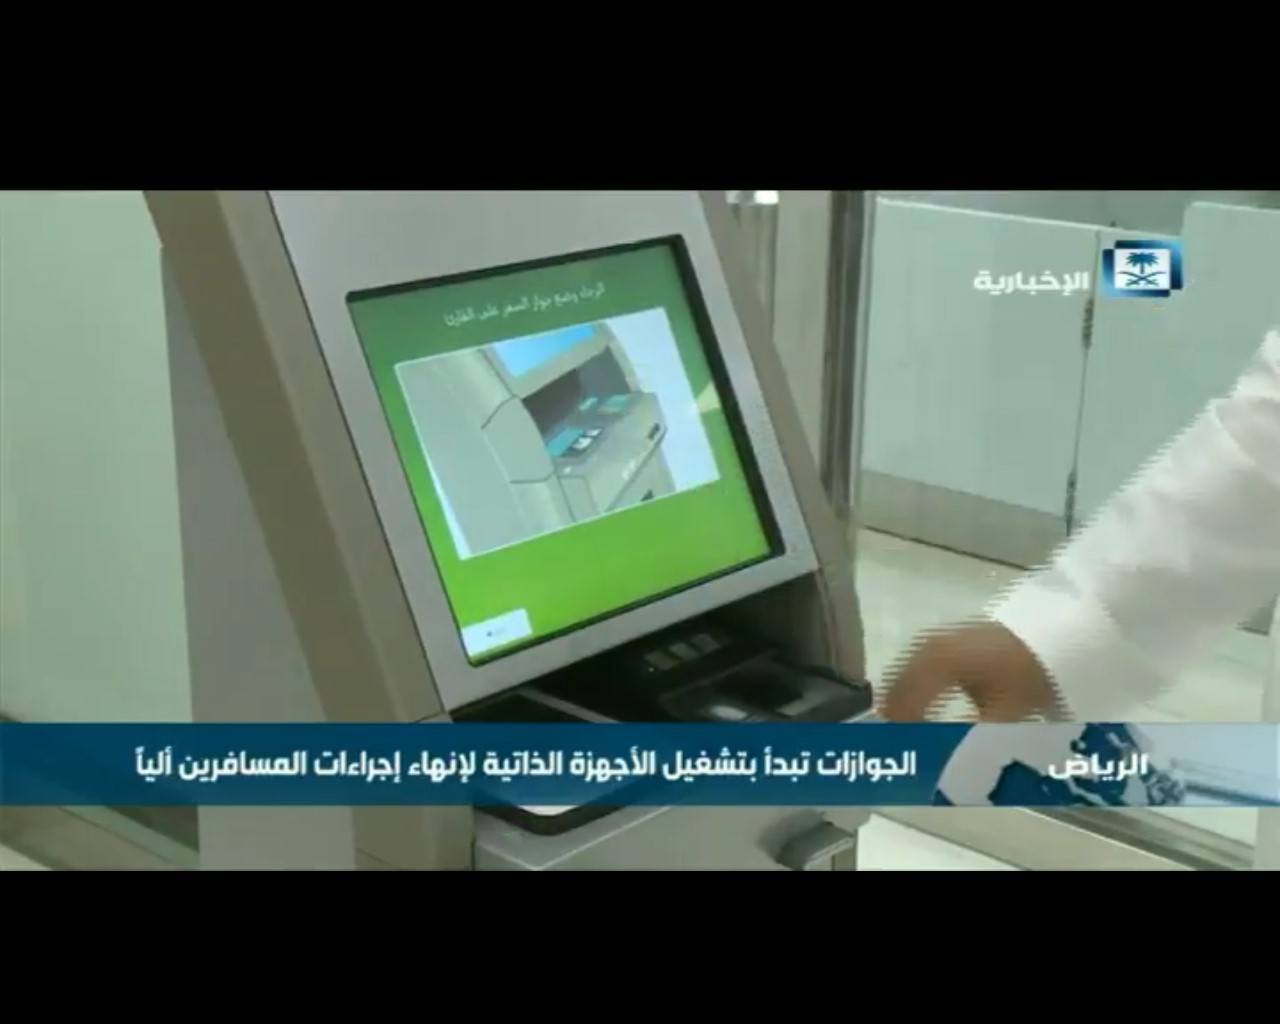 فيديو يسلط الضوء على تشغيل الجوازات للأجهزة الذاتية لإنهاء إجراءات المسافرين آلياً